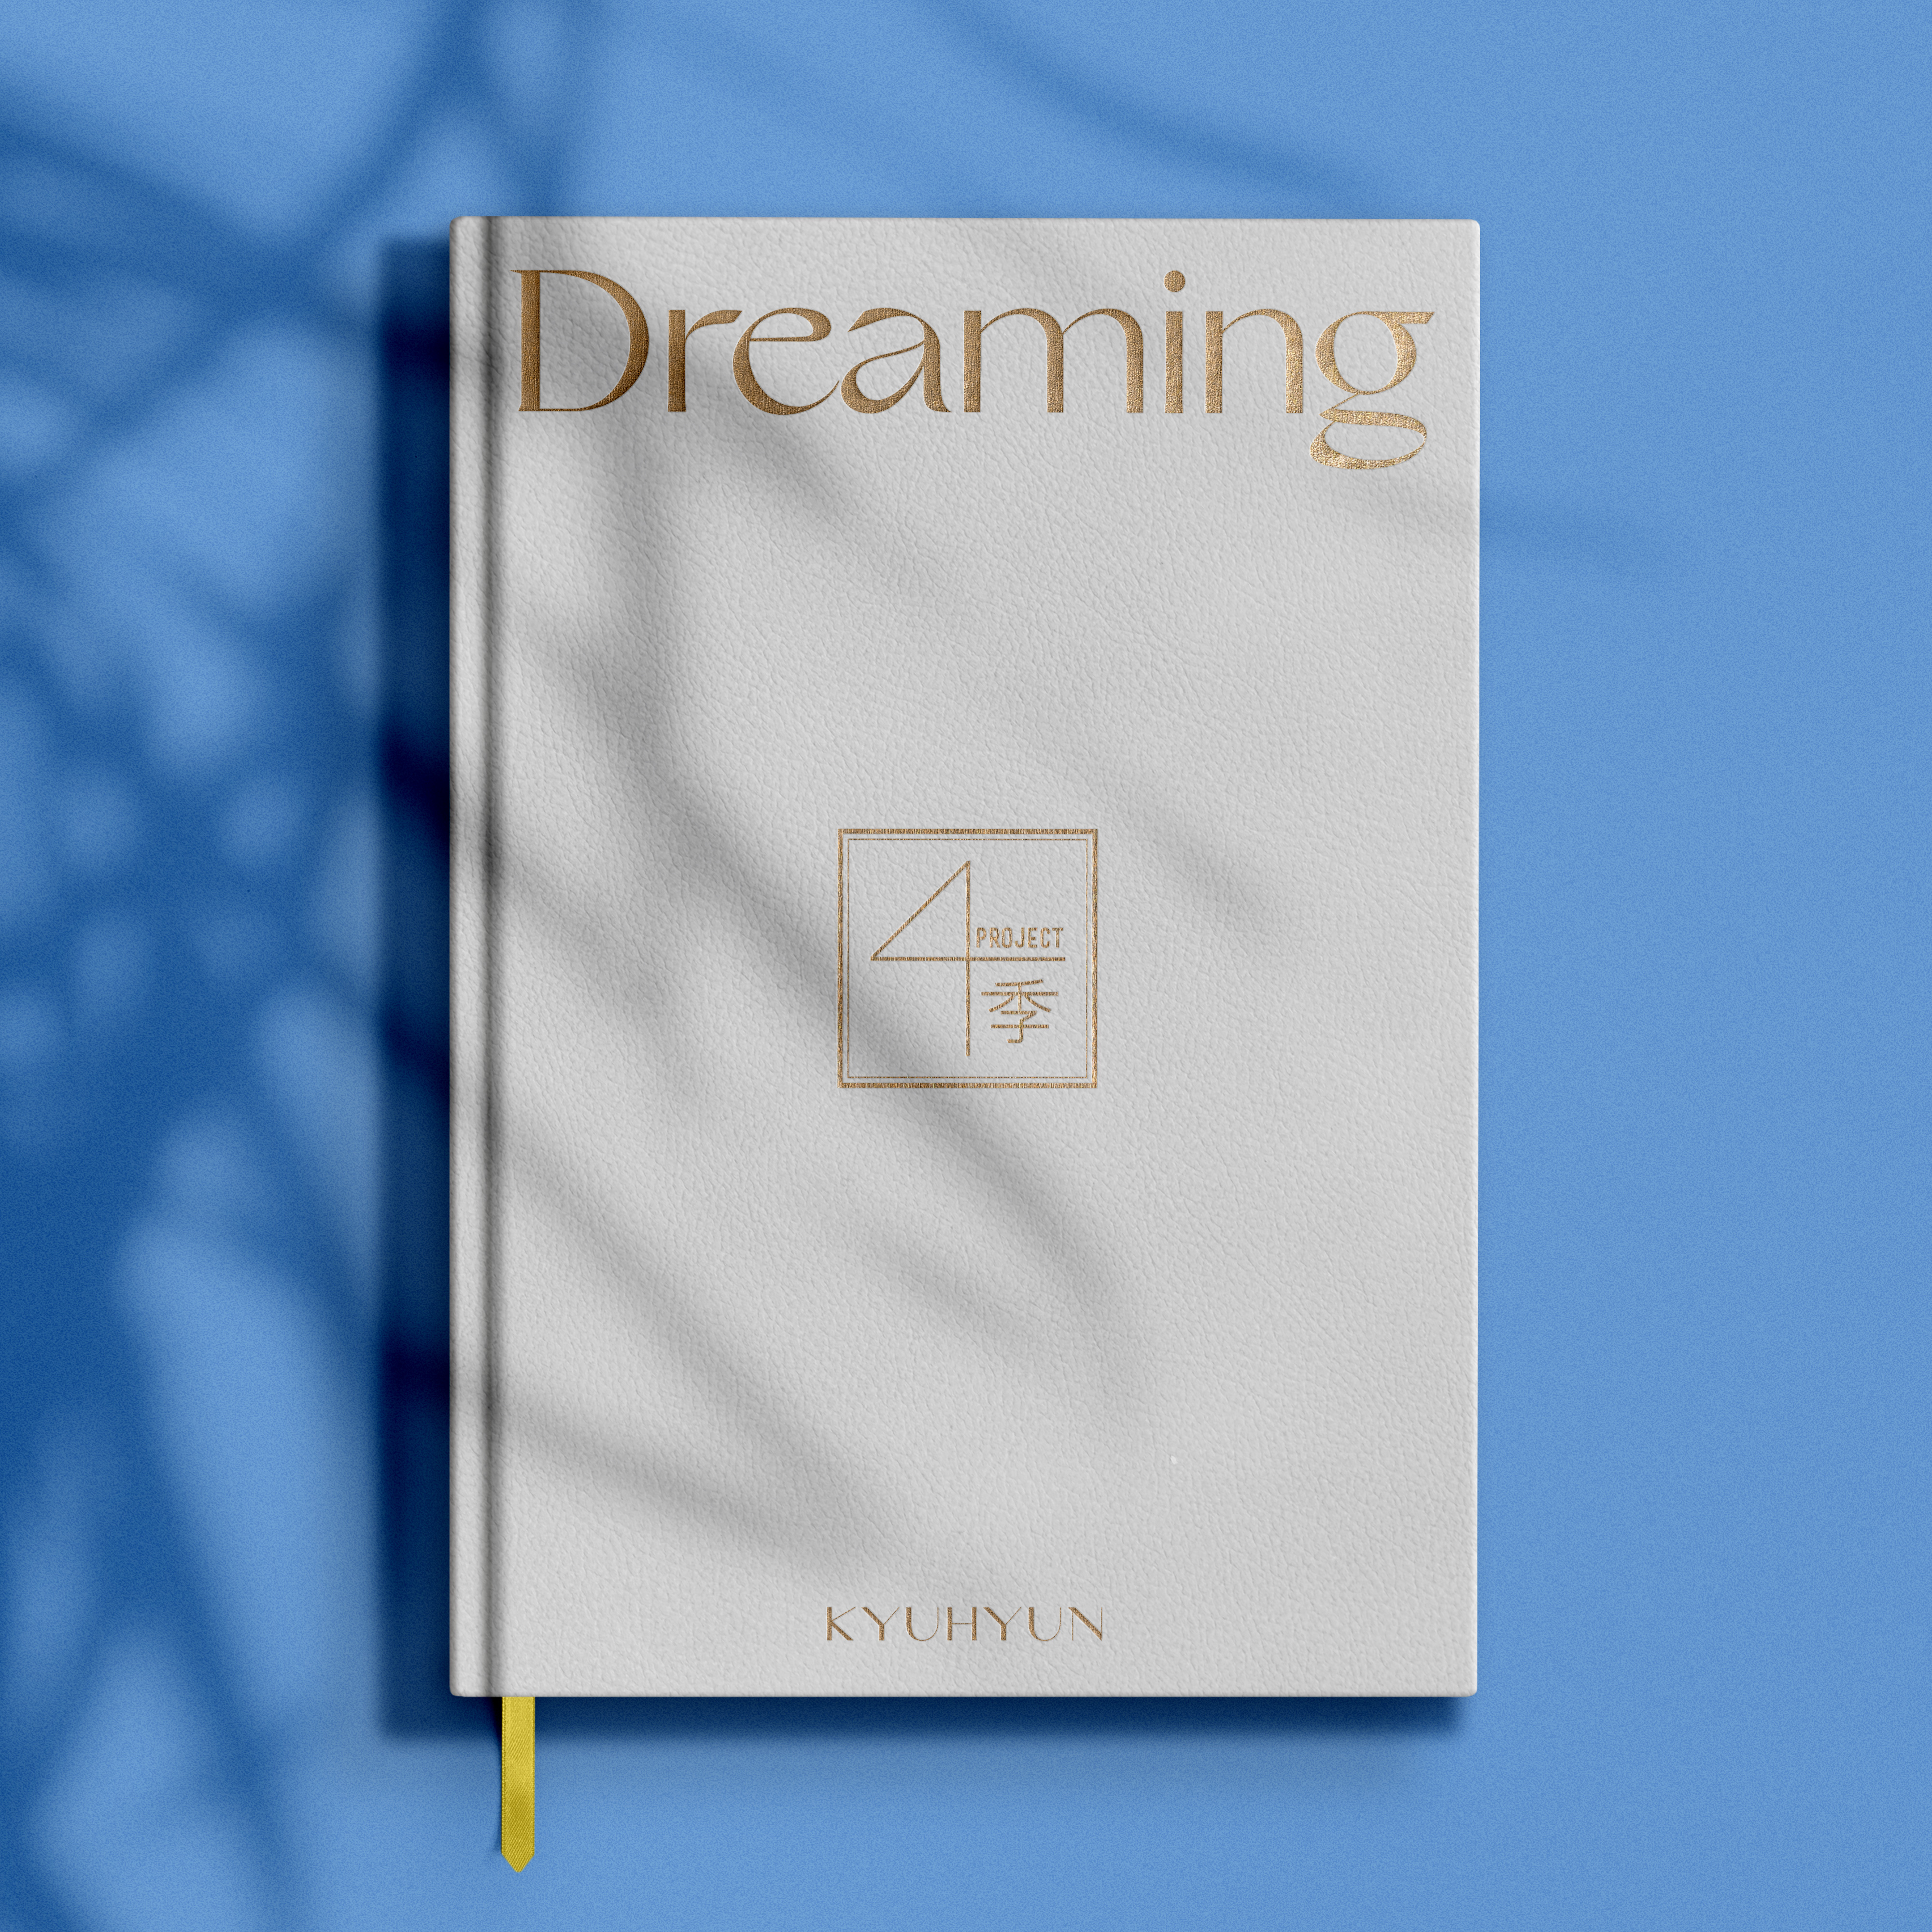 [影音] 圭賢 - Dreaming  [Project : 季]